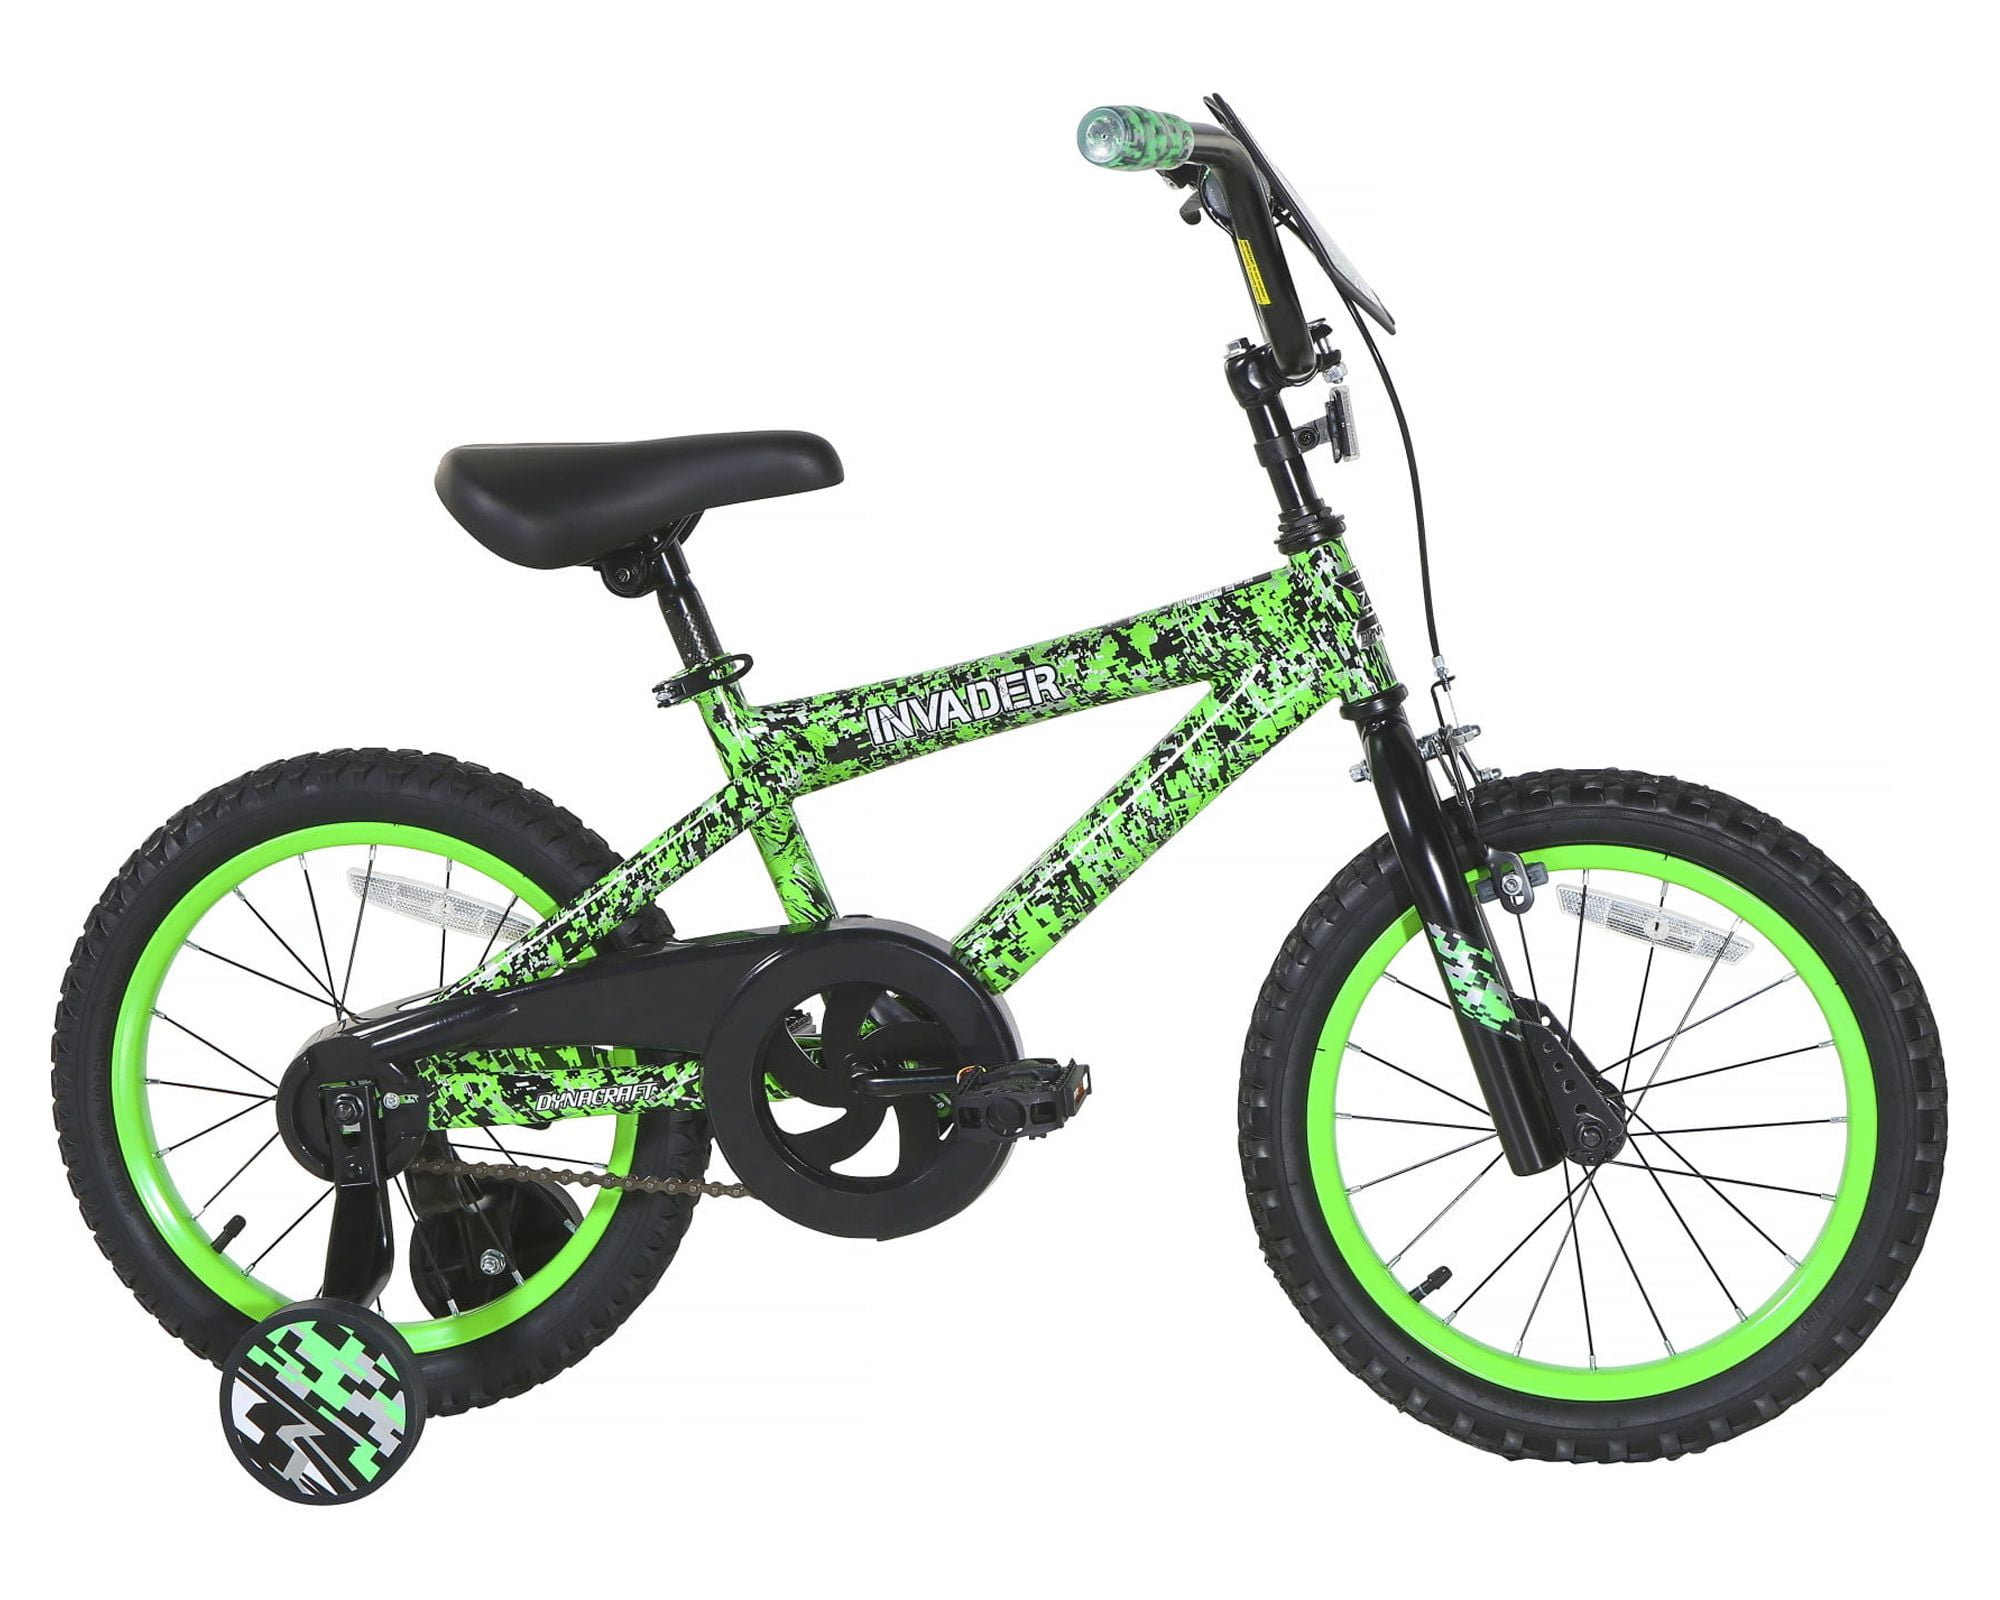 Dynacraft Dynacraft 16-inch Boys BMX Bike for Age 5-7 Years